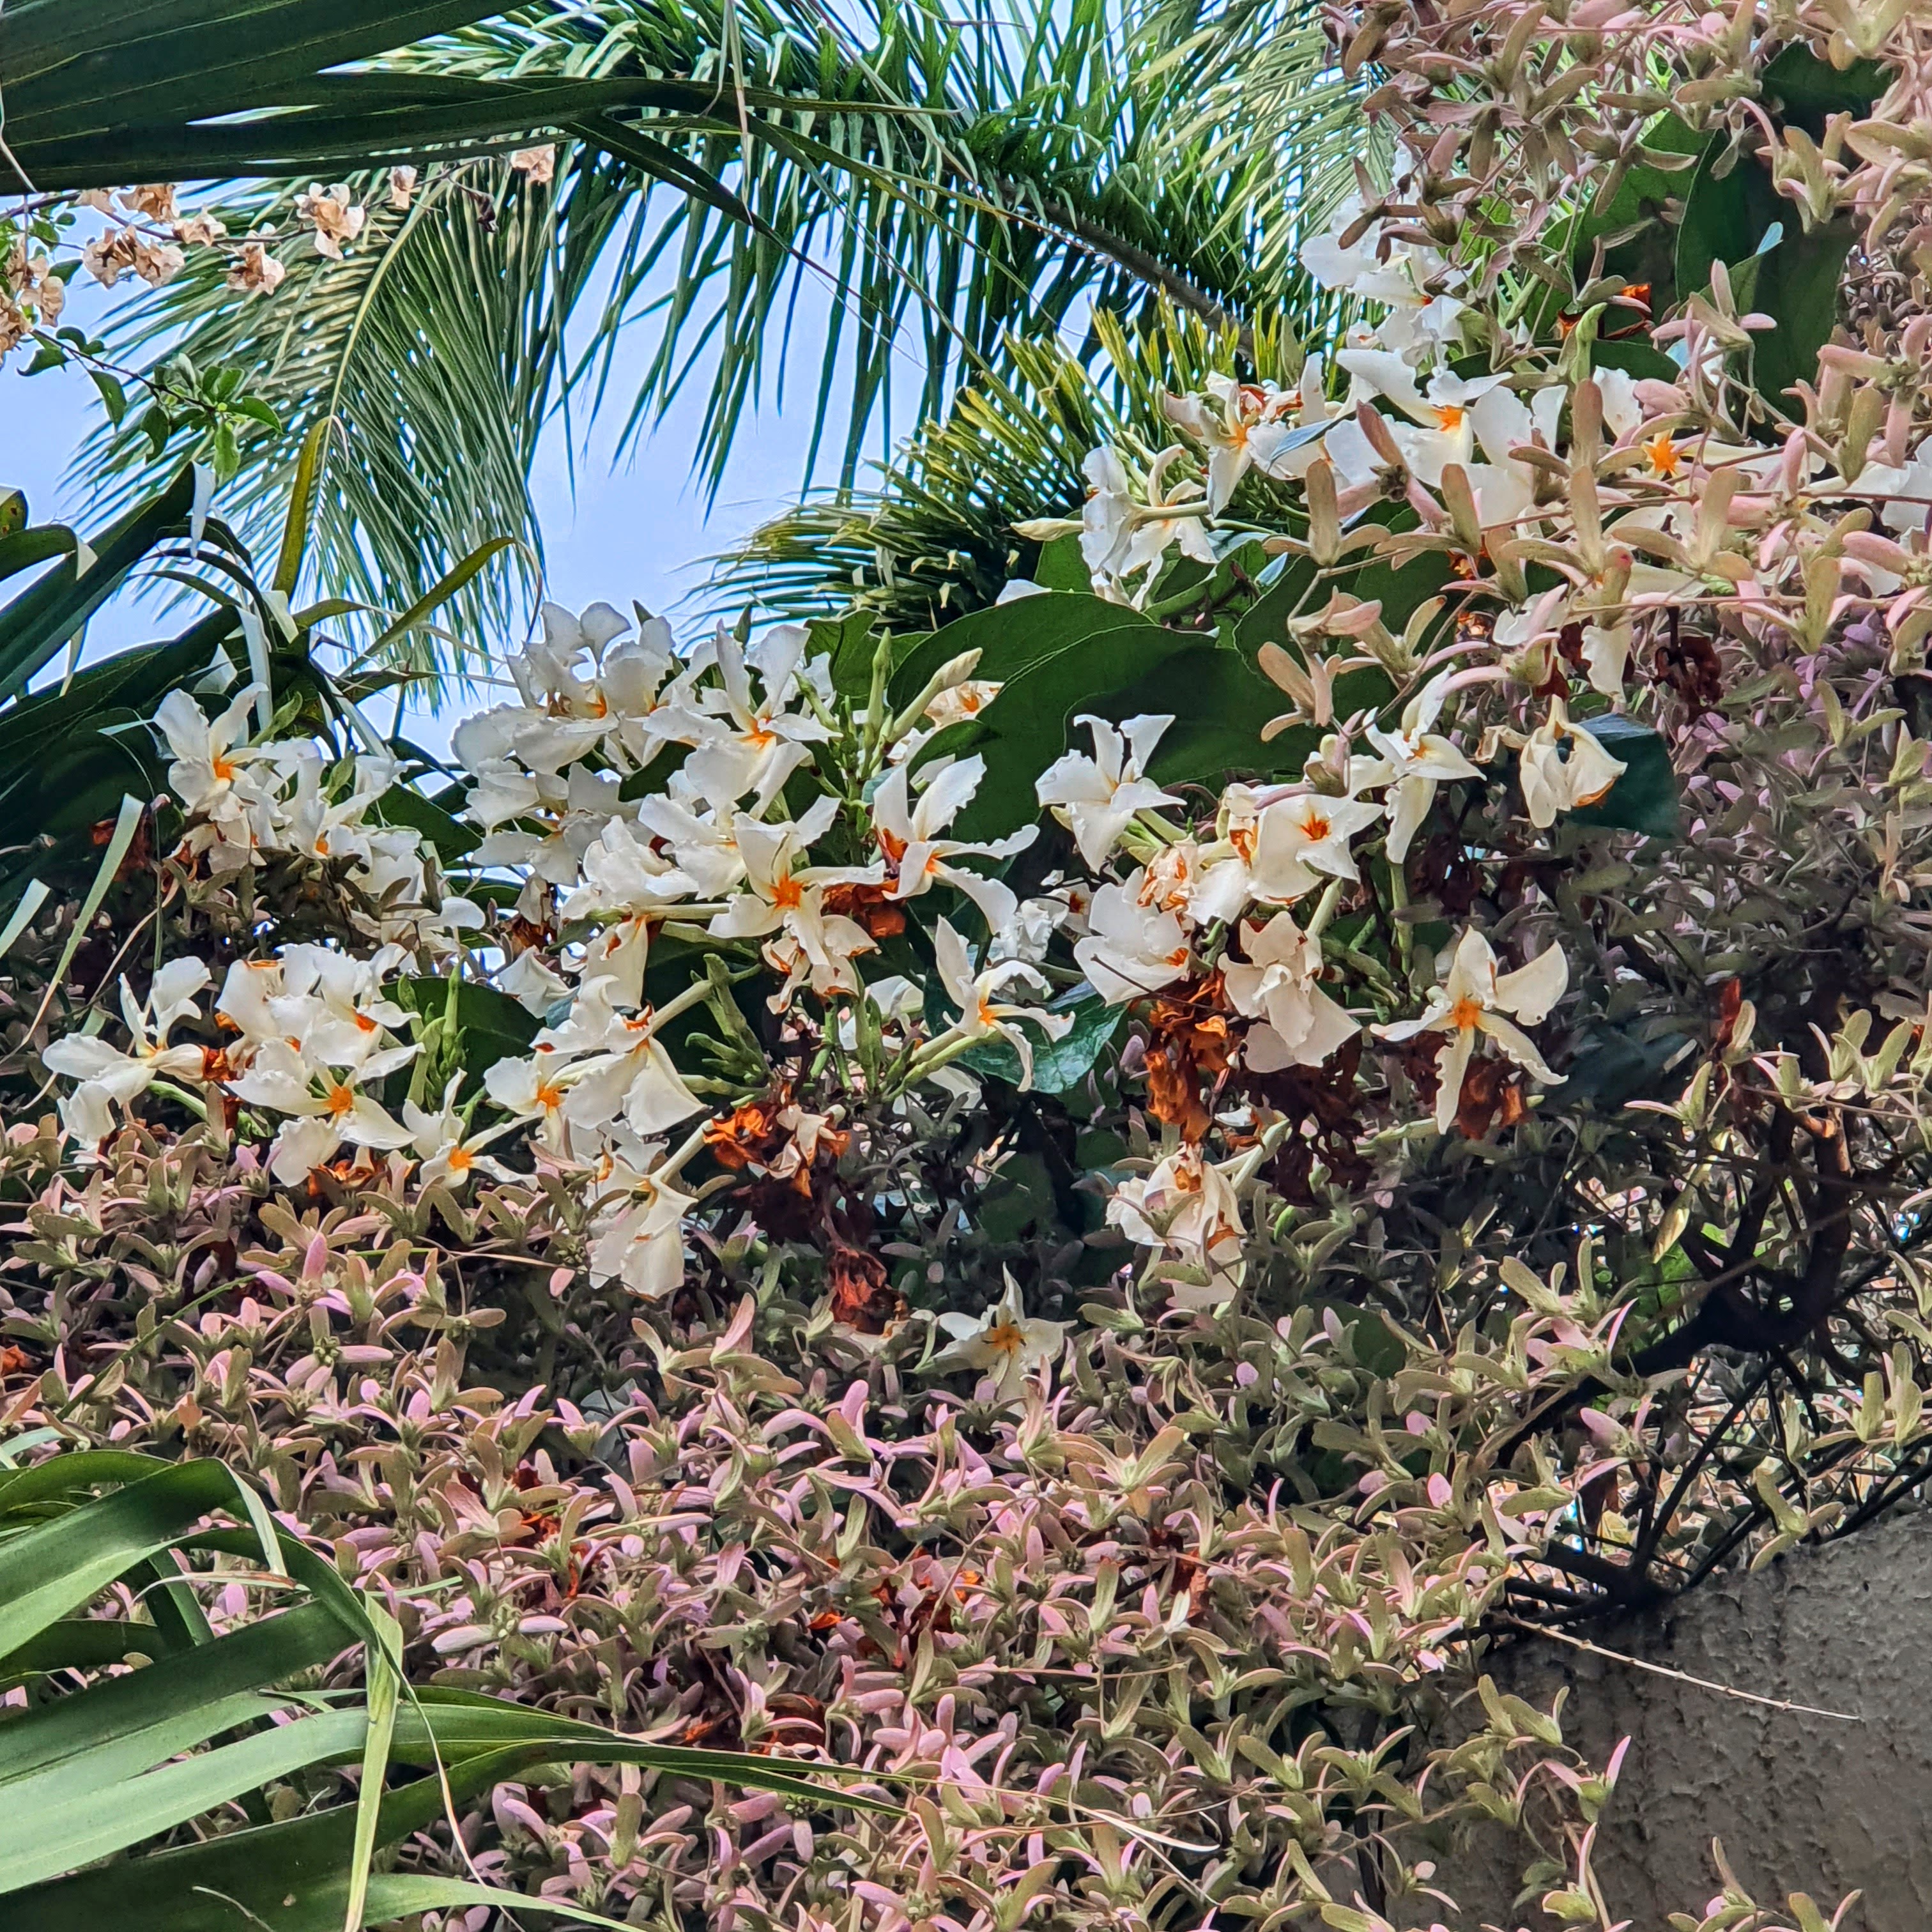 Flores do cipó-de-leite junto de brácteas de uma congeia.